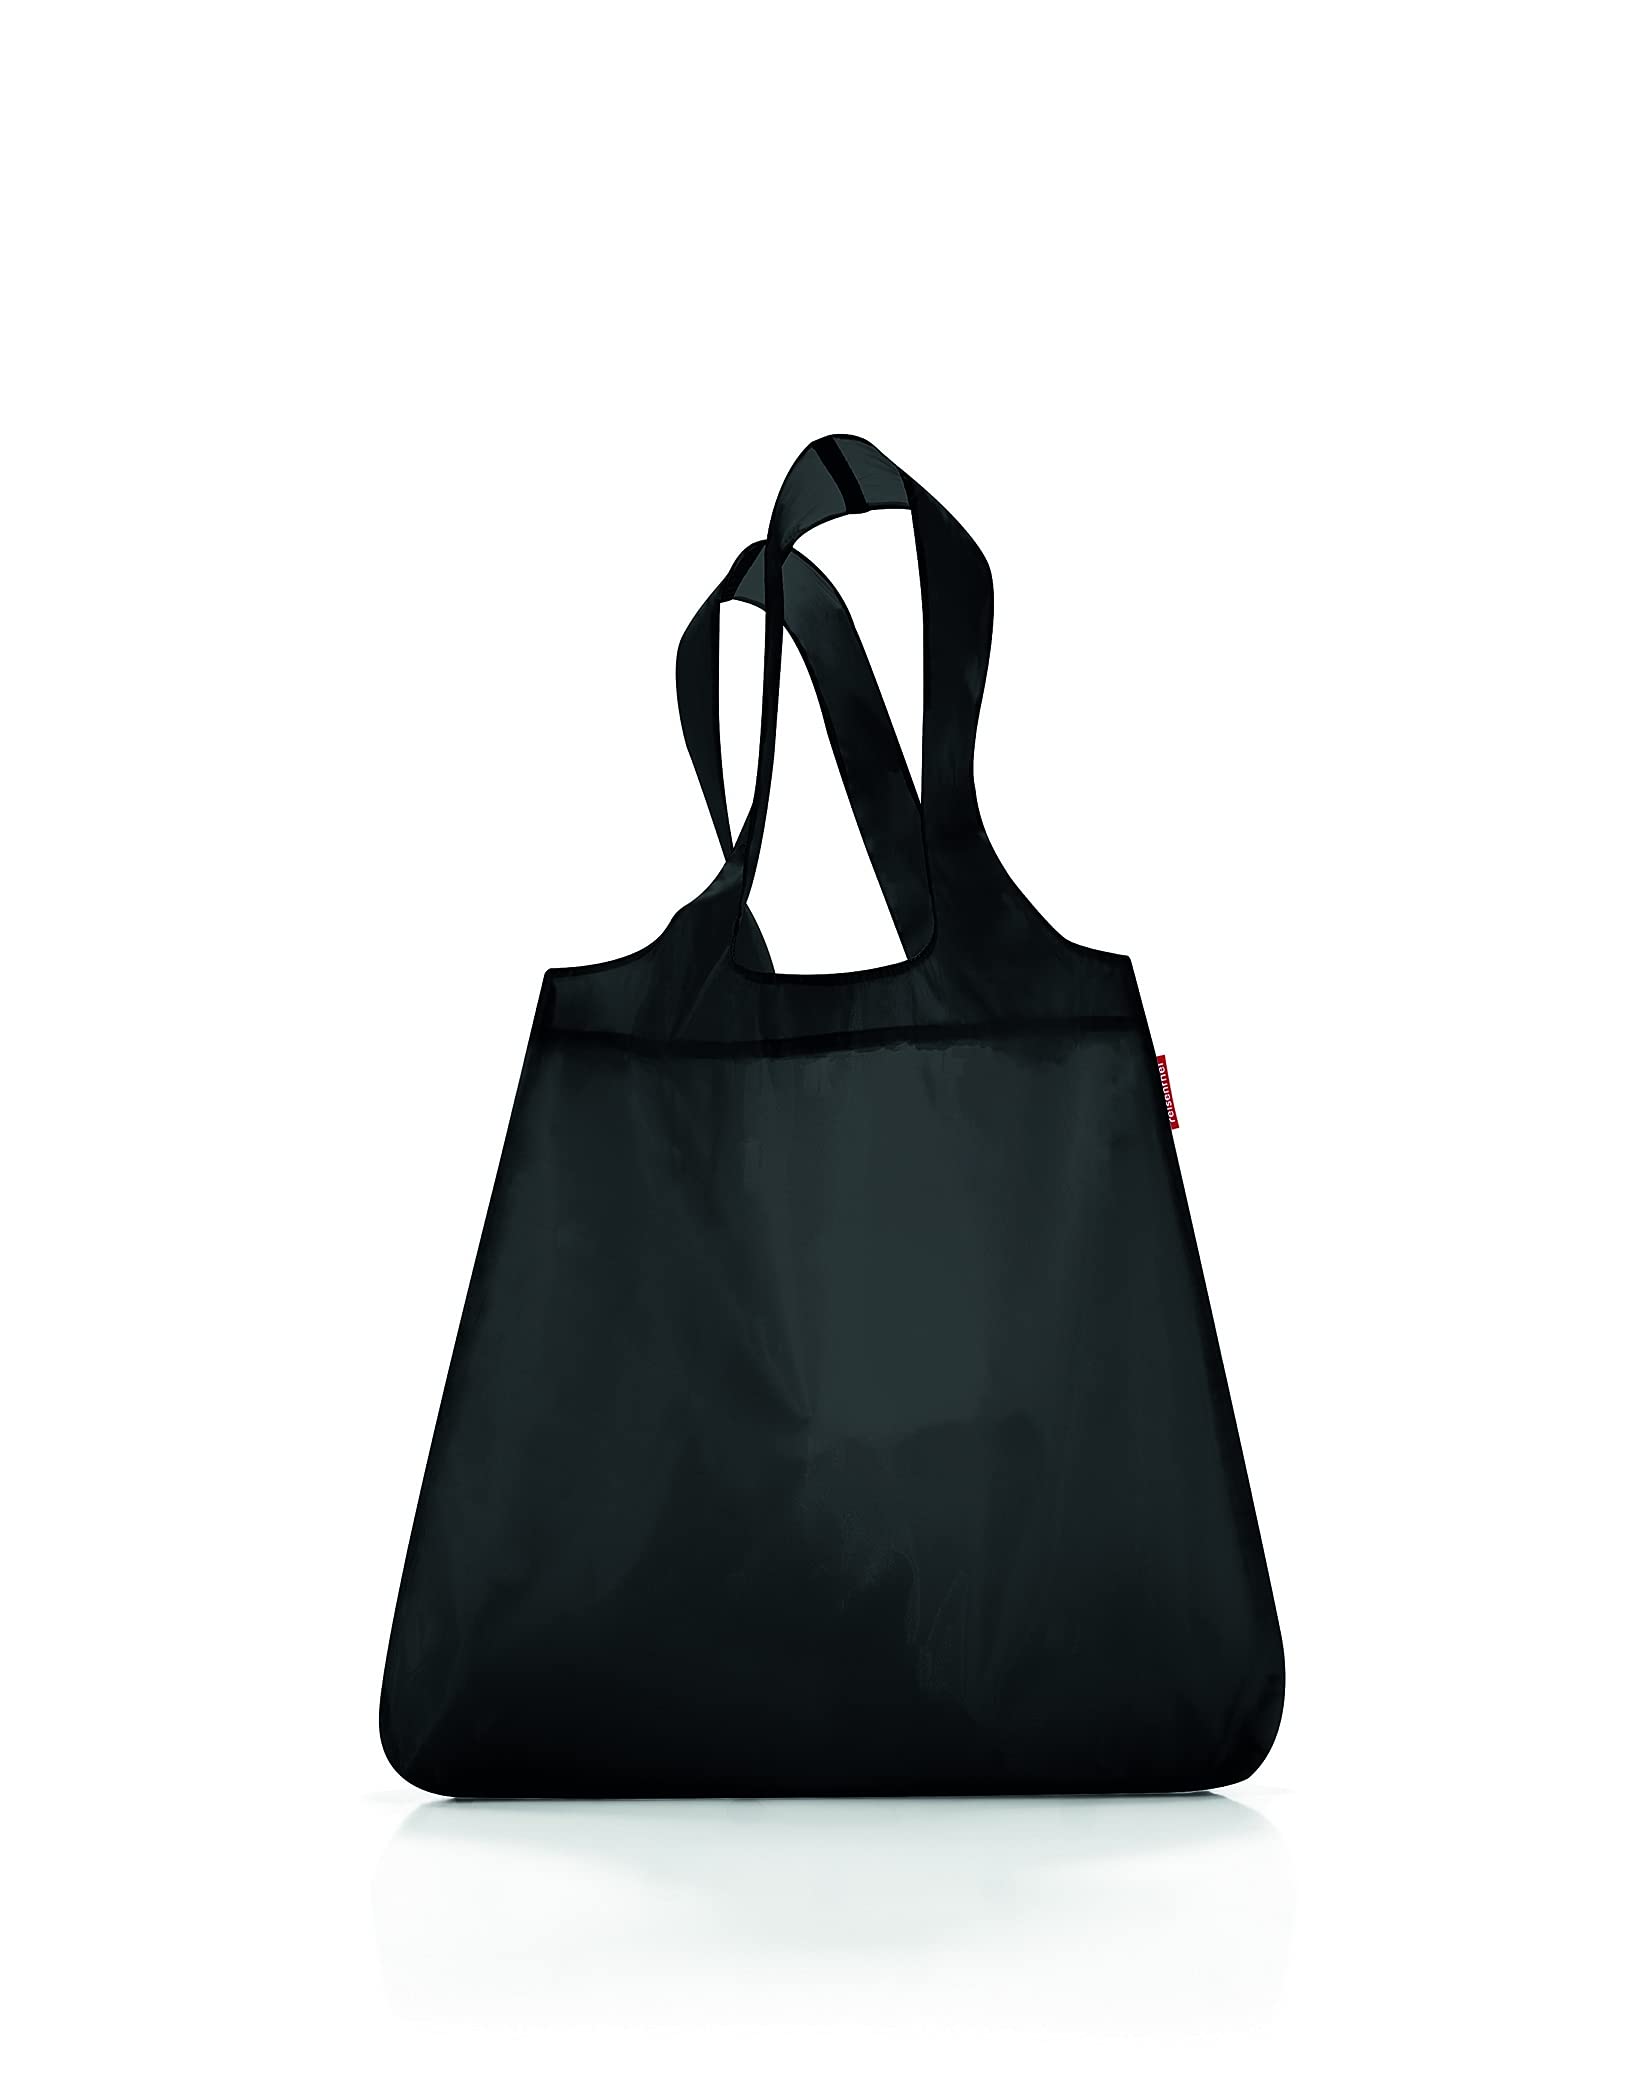 unisex Handtaschen schwarz mini maxi shopper - von Reisenthel